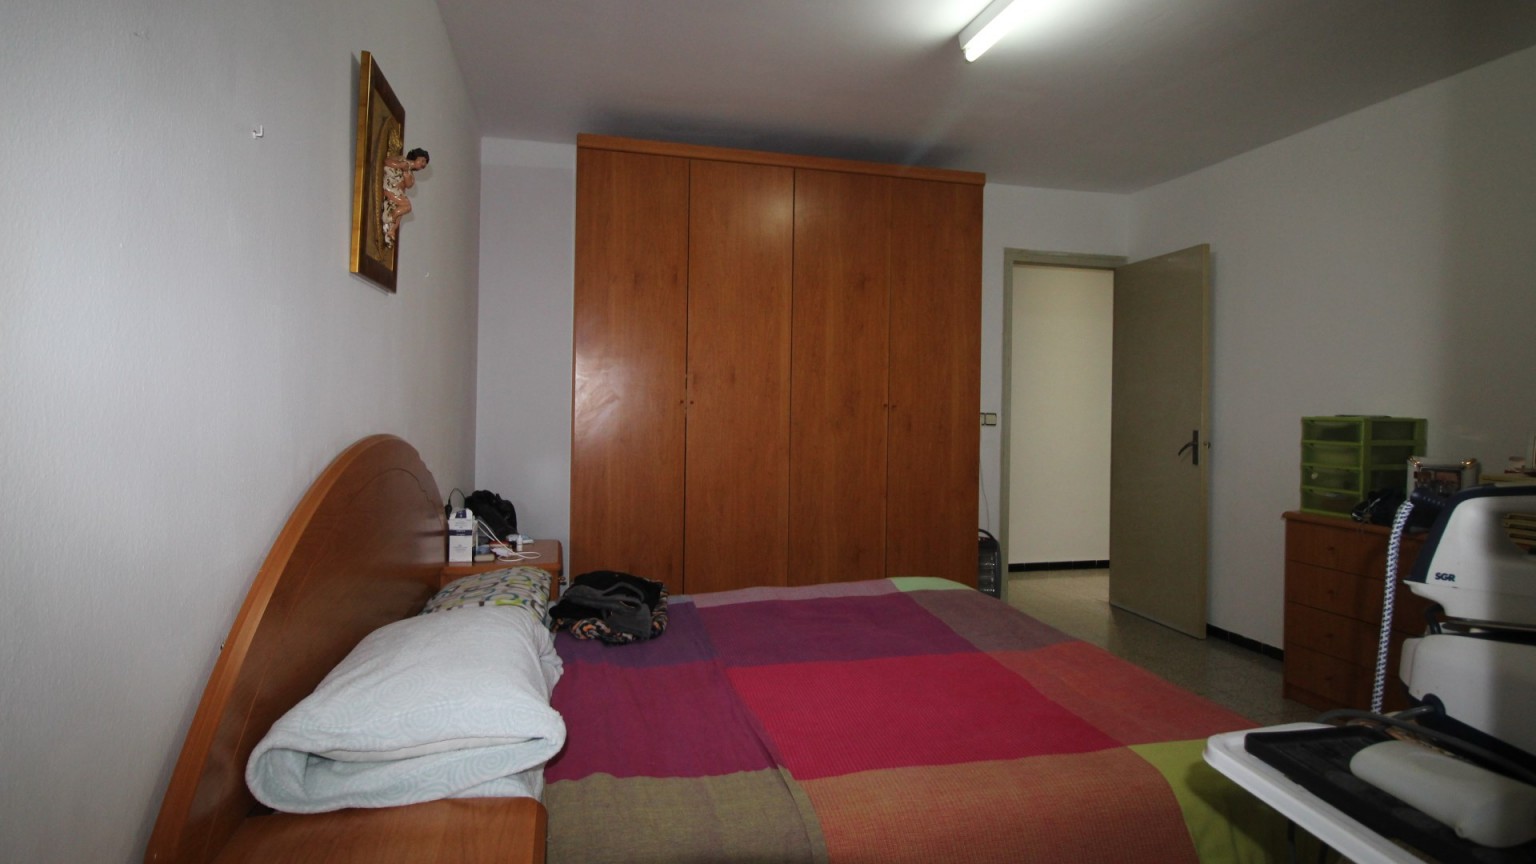 Apartment for sale, 3 bedrooms, Creu de la Mà area.